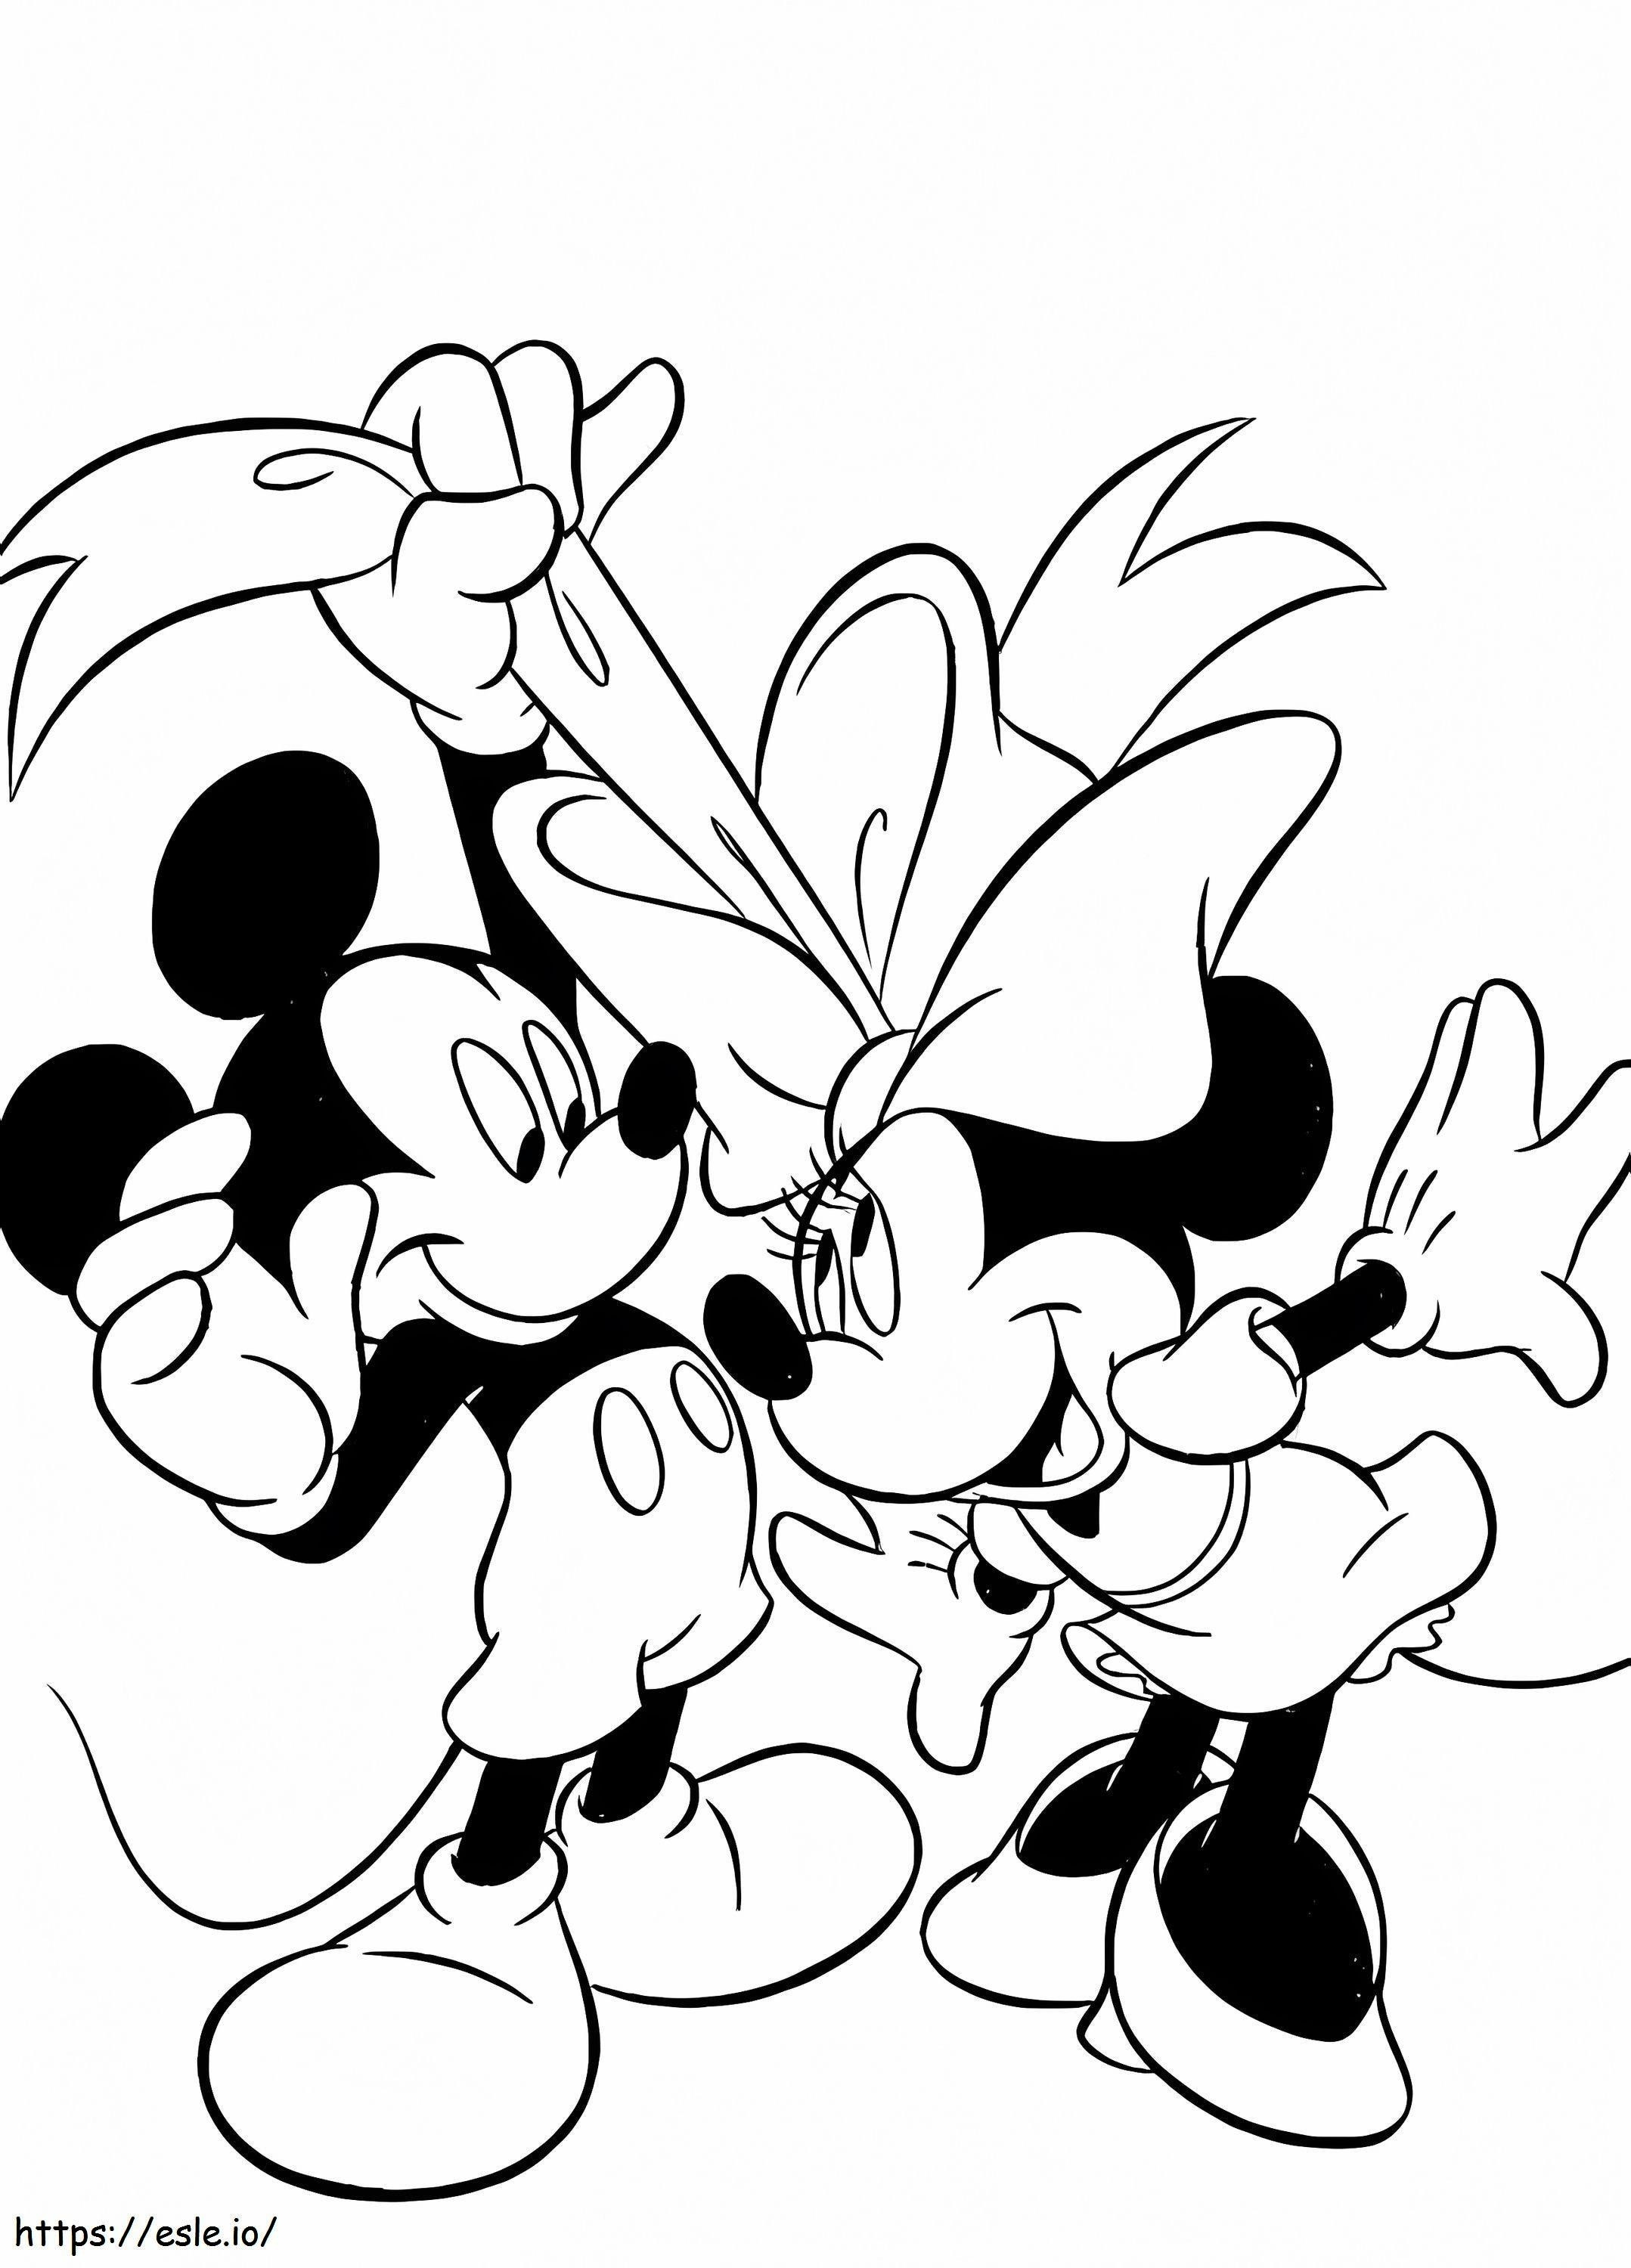 Diversión de Mickey y Minnie para colorear